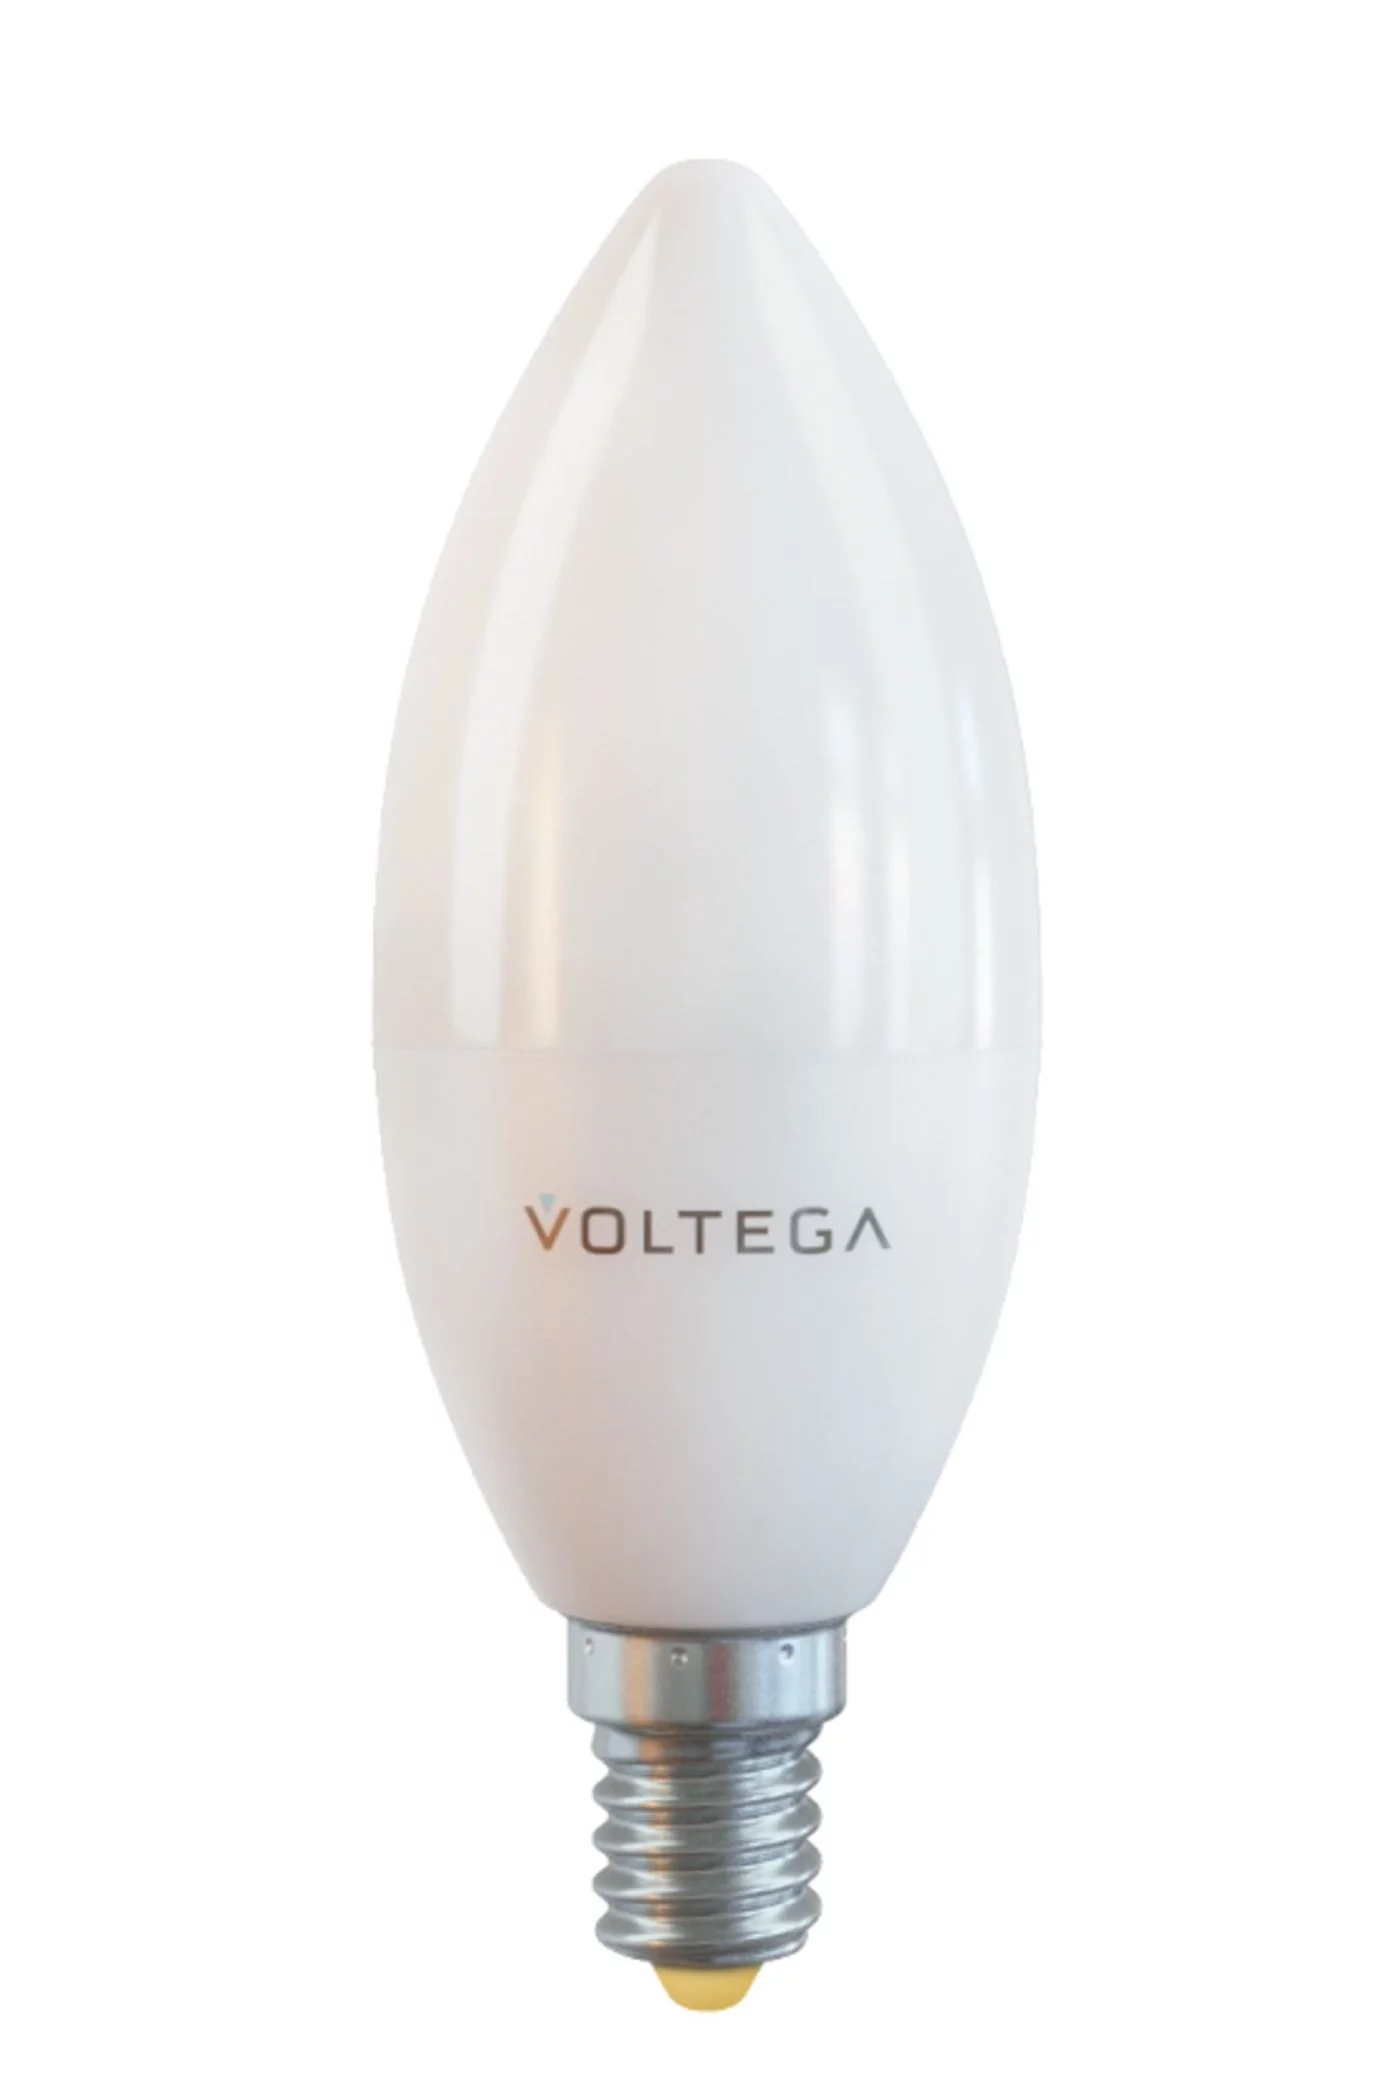   
                        
                        Лампа VOLTEGA  17068    
                        .  
                                                                                                Материал: Пластик.                          фото 1